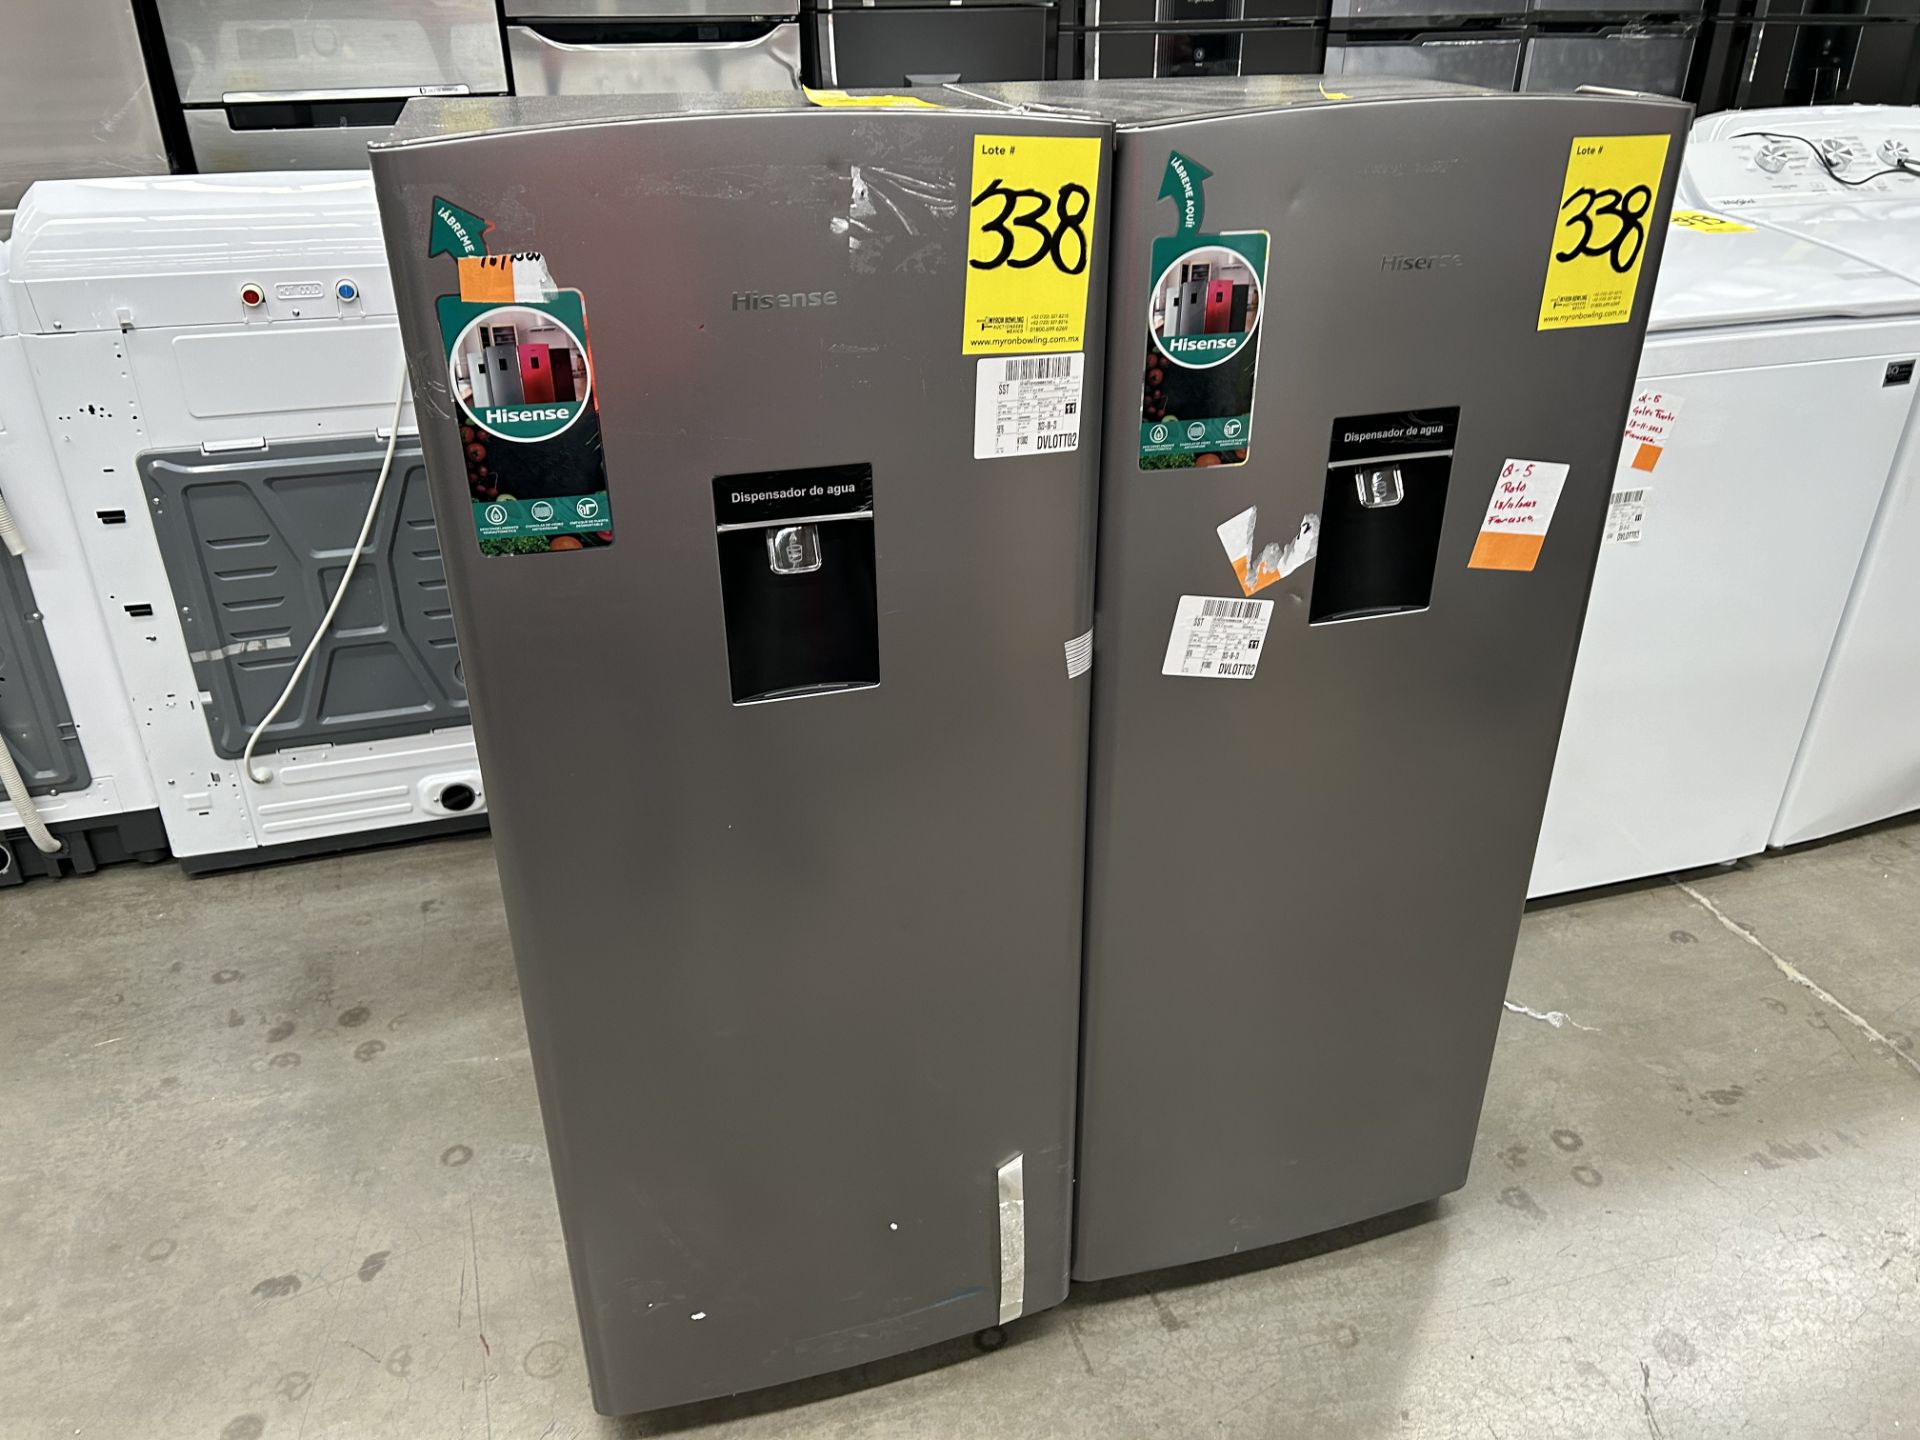 Lote de 2 refrigeradores contiene: 1 Refrigerador con dispensador de agua Marca HISENSE, Modelo RR6 - Image 3 of 6